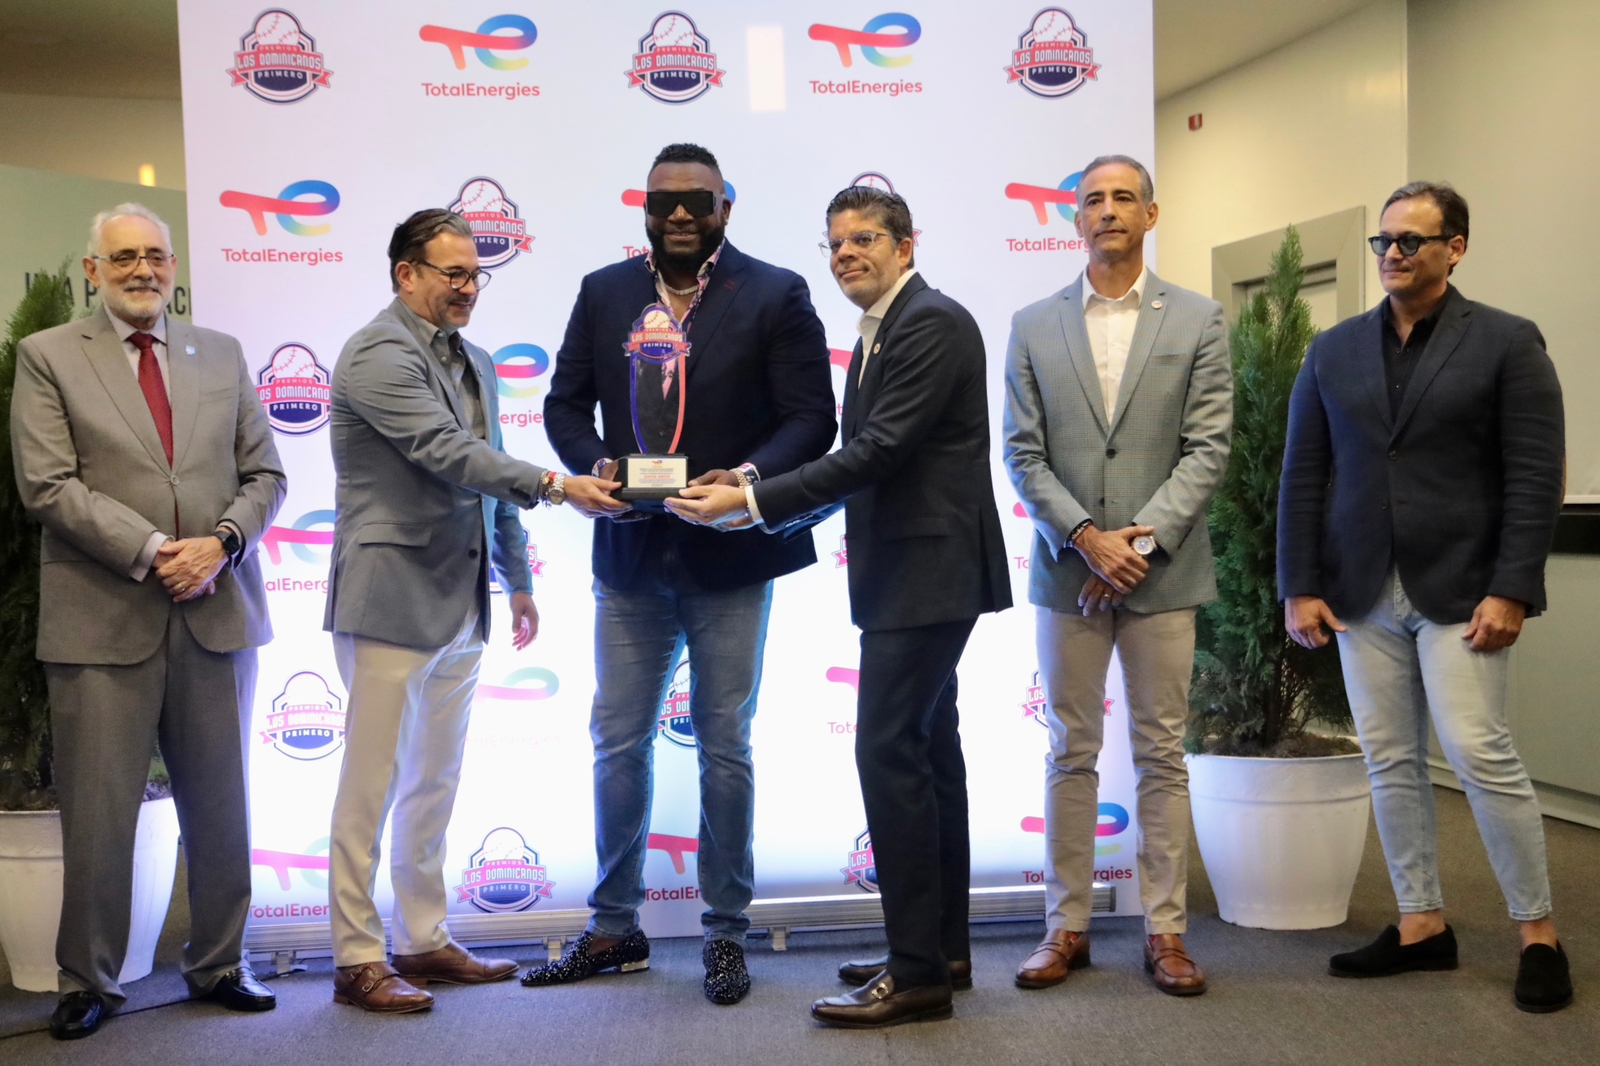 Mauricio, Valdéz, Offerman y Núñez ganaron premiación Los Dominicanos Primero Cuqui Córdova por TotalEnergies